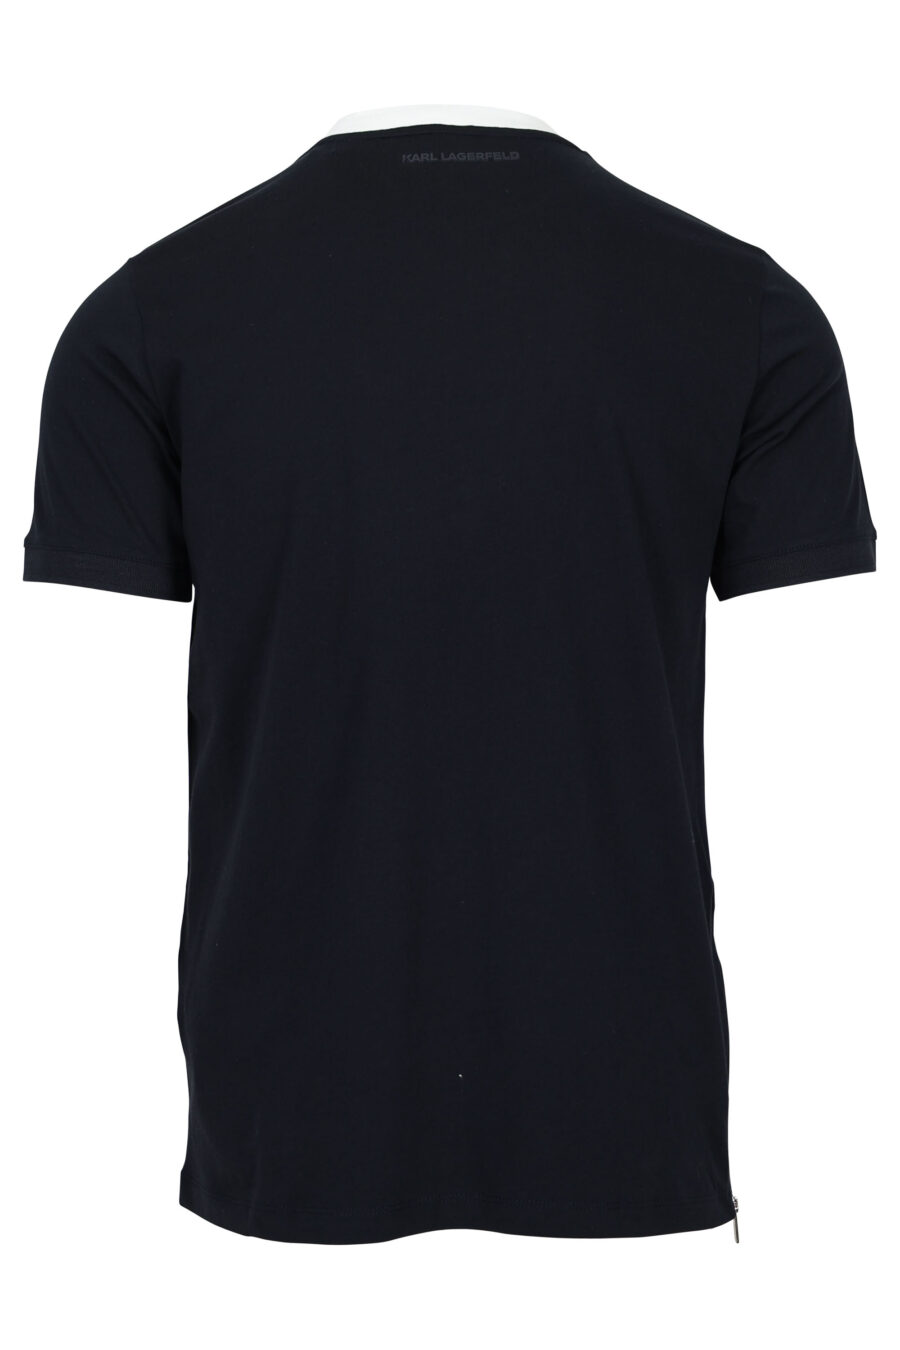 Camiseta azul oscura con cuello blanco y minilogo "karl" - 4062226955836 1